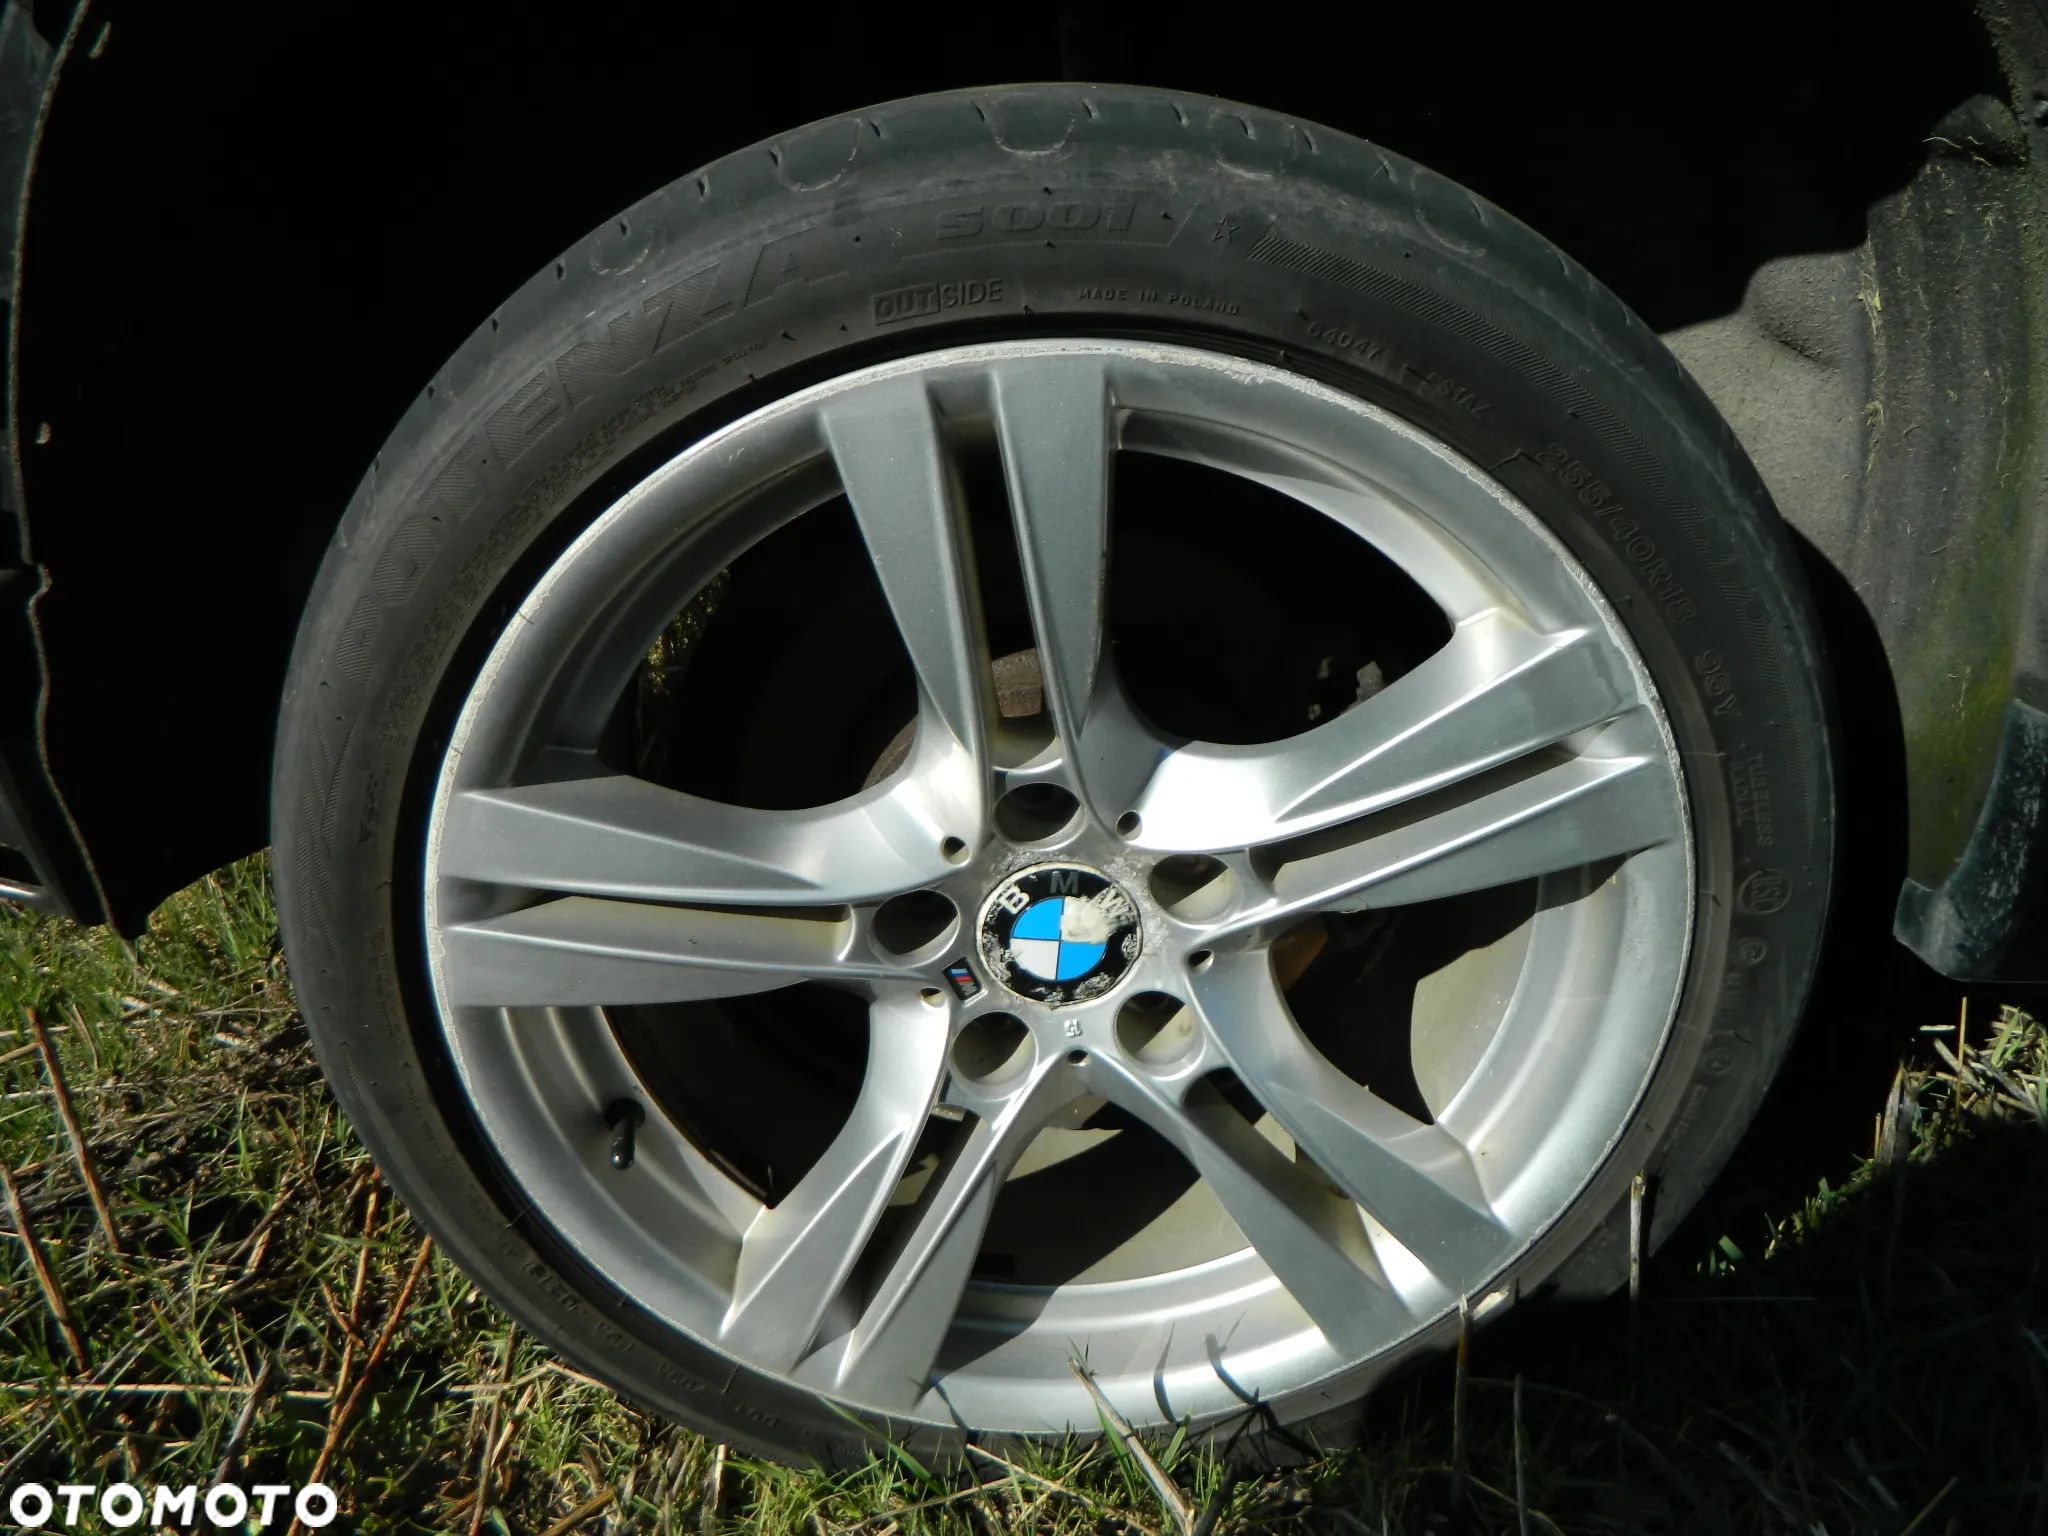 4 X FELGI ALUMINIOWE M-PAKIET BMW 18'' - 1